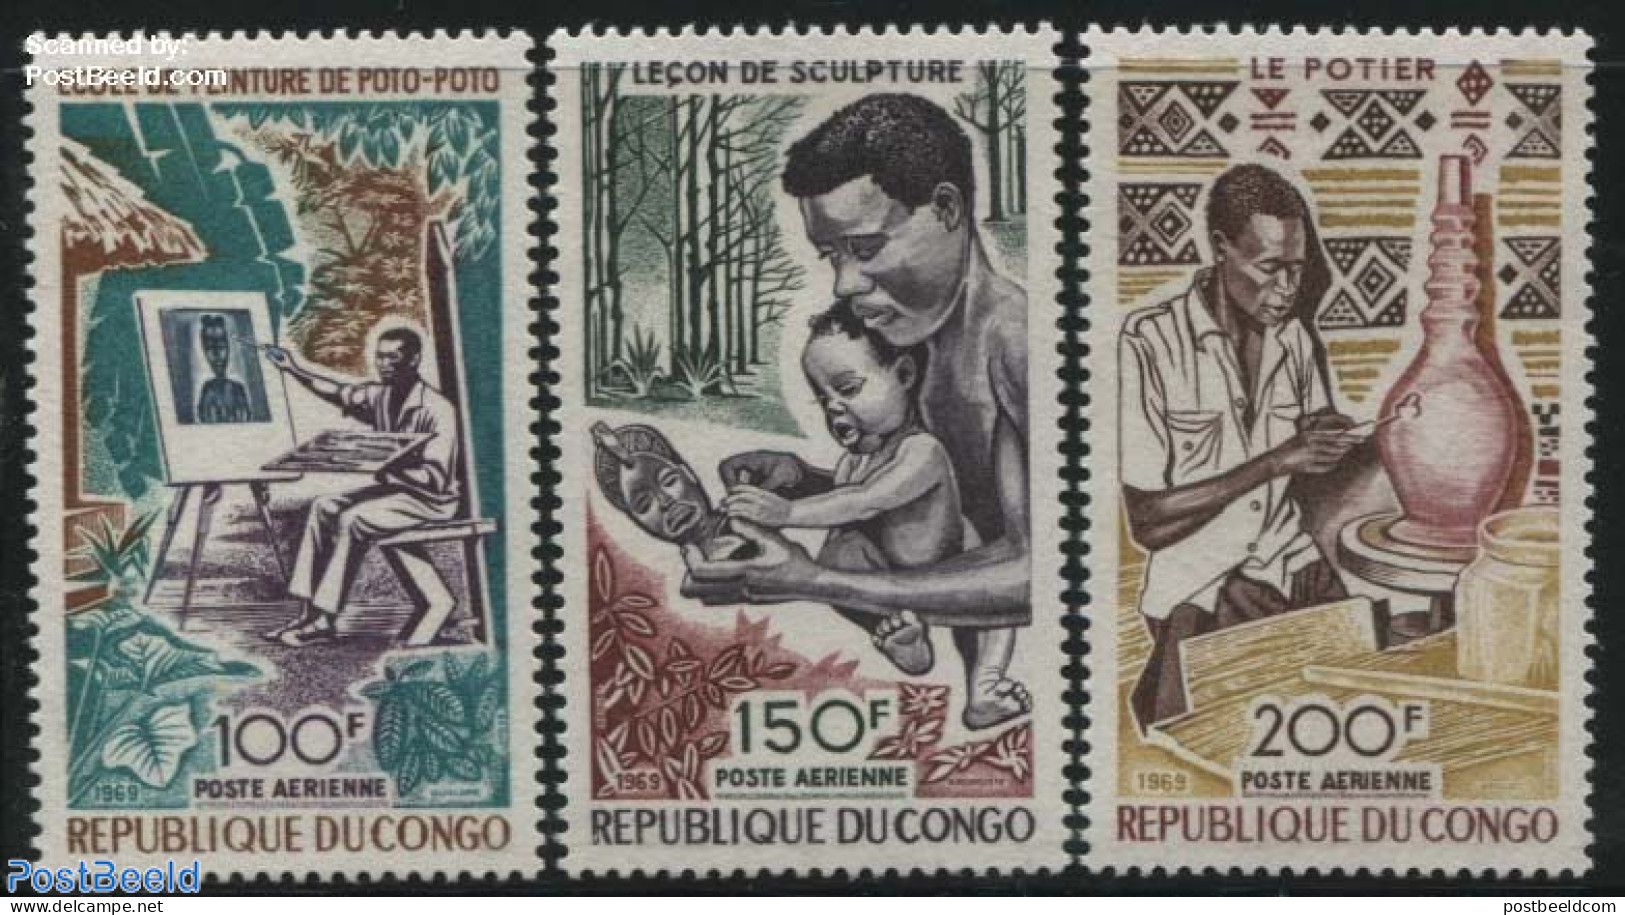 Congo Republic 1970 Art & Culture 3v, Mint NH, Art - Ceramics - Handicrafts - Porcelain